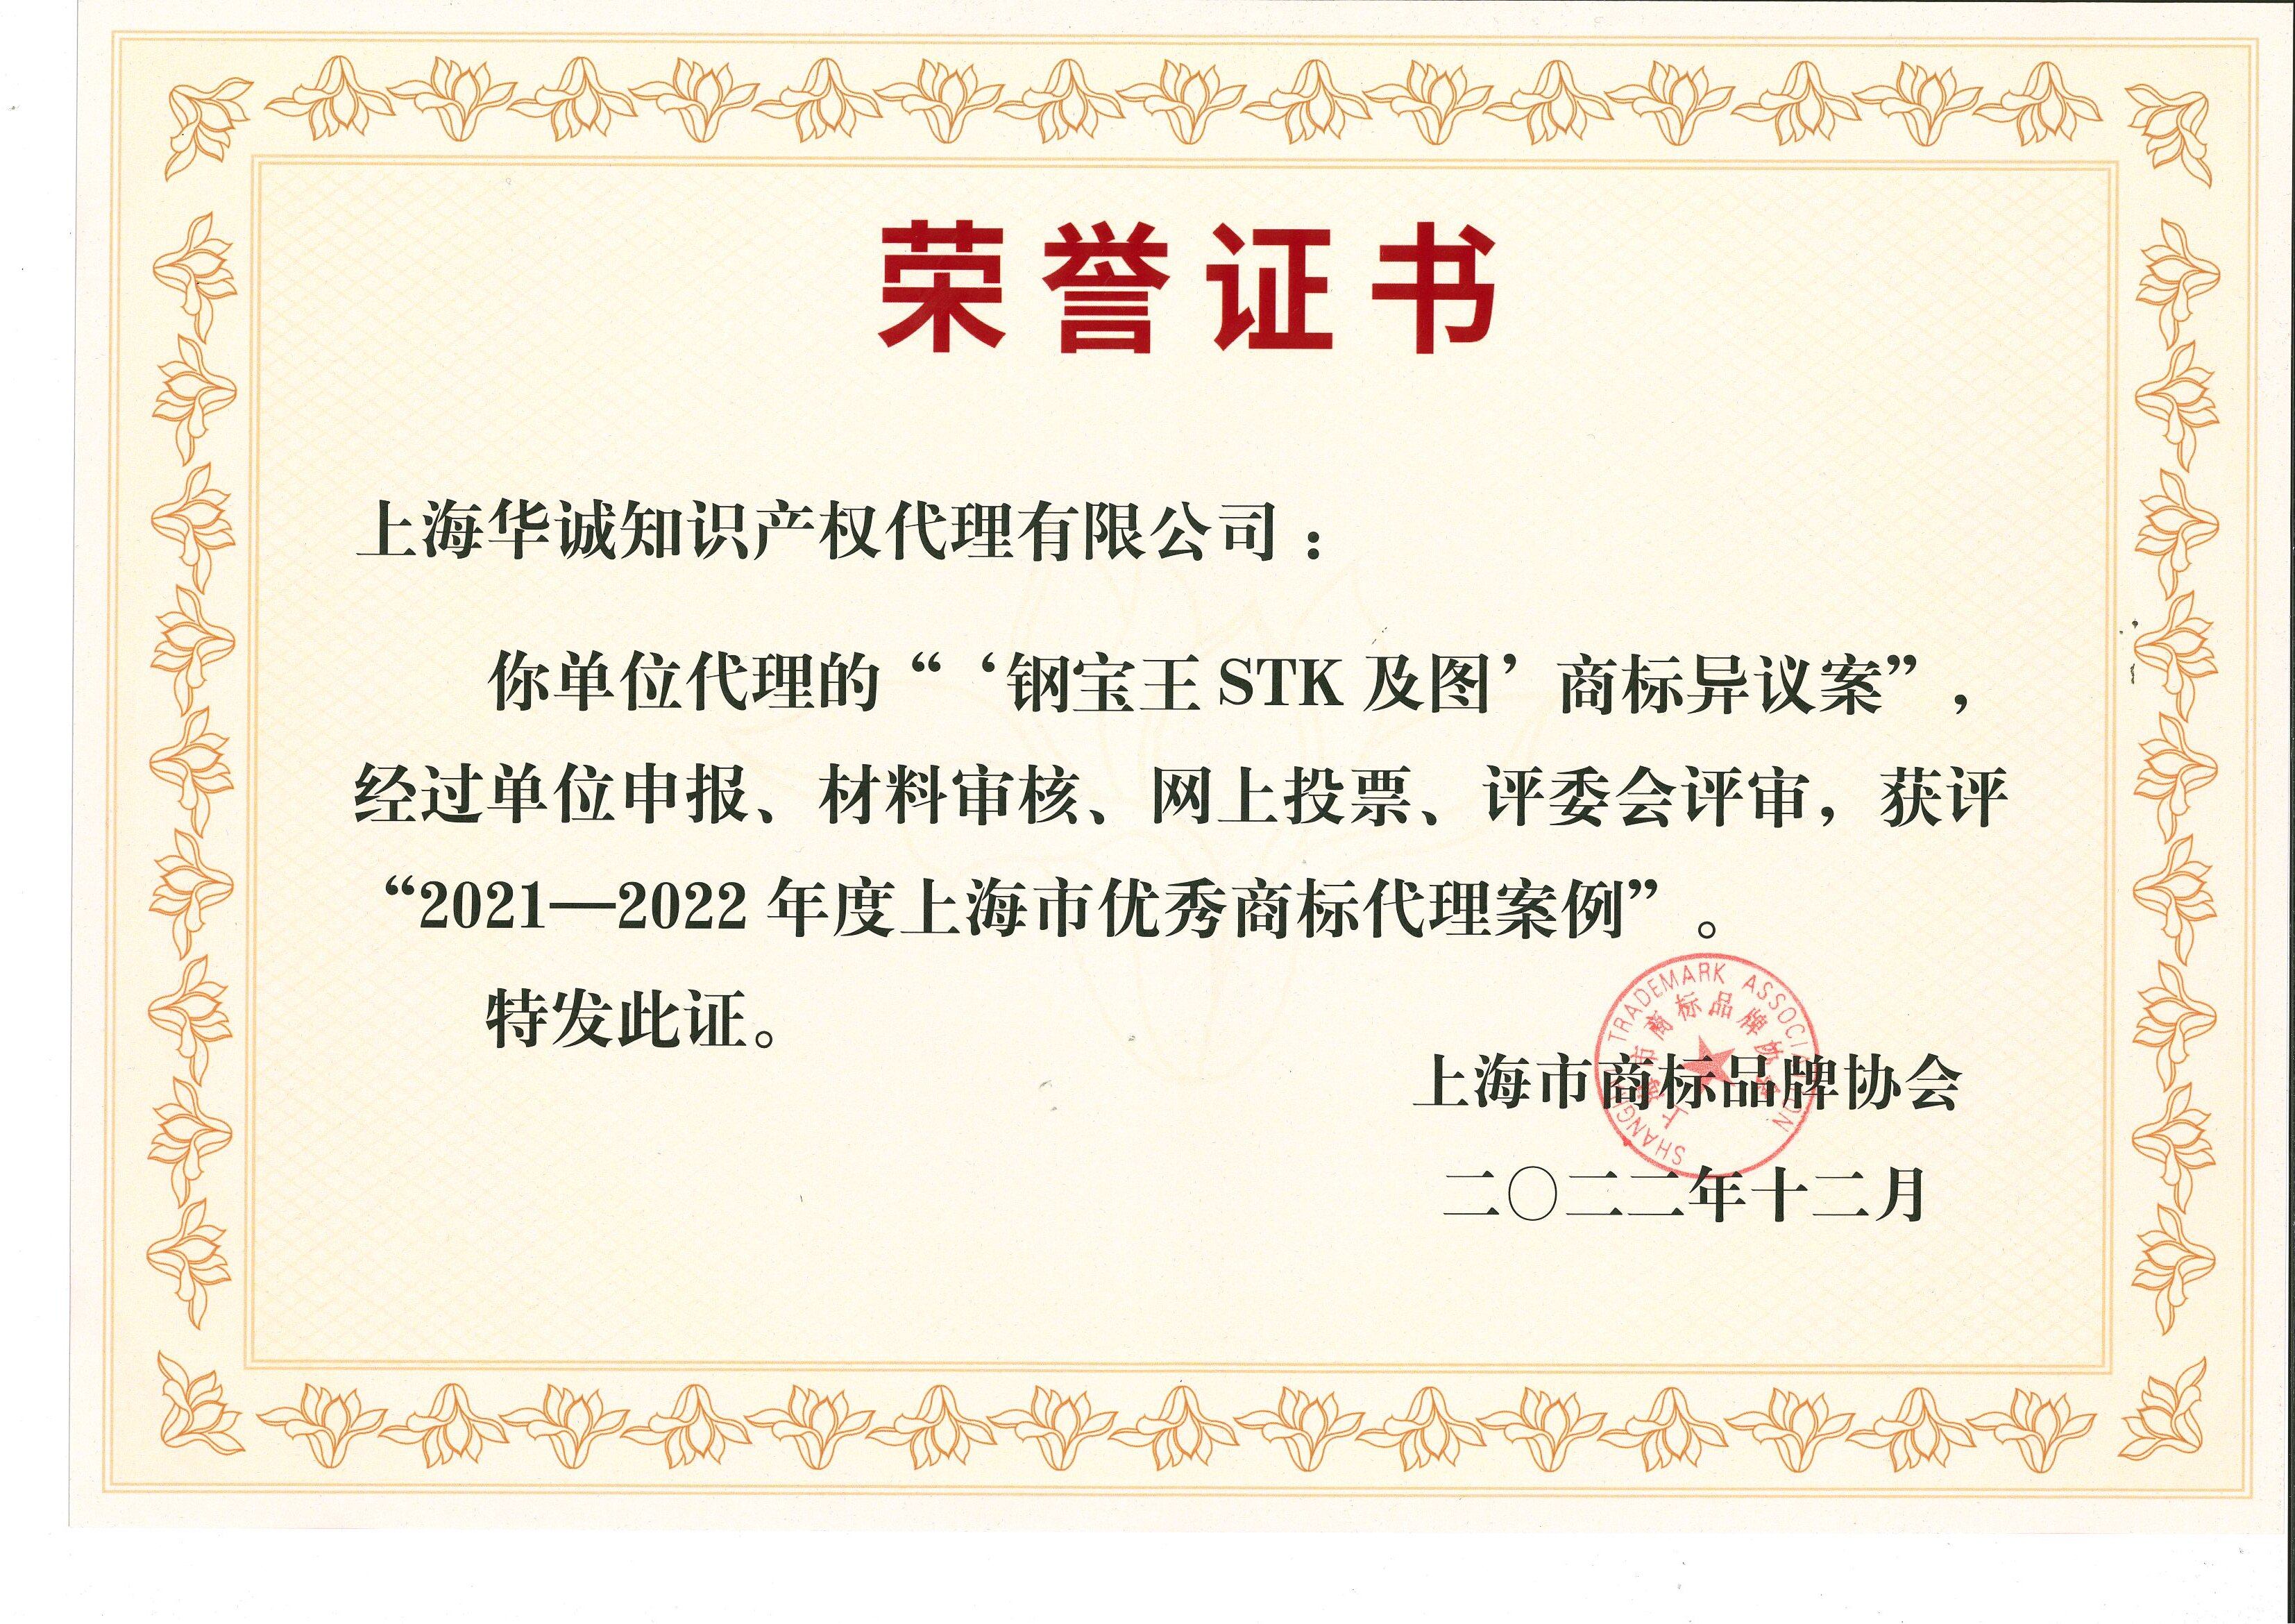 2022年-公司-优秀商标代理案例证书（上海市商标品牌协会）.jpg